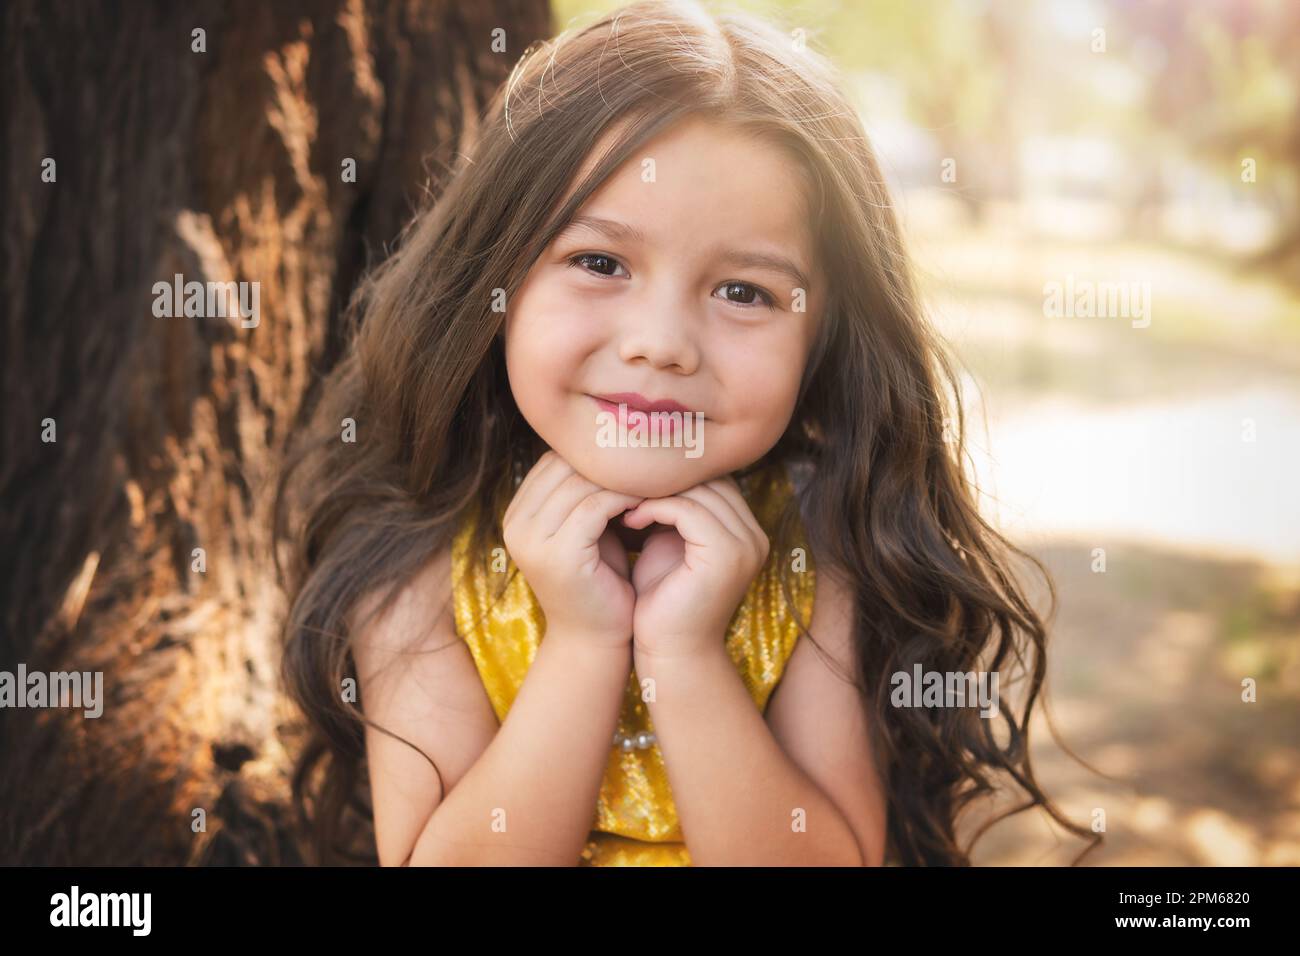 Expresión feliz de una niña, hermosa chica rubia sonriendo, tema del día de los niños. Foto de stock